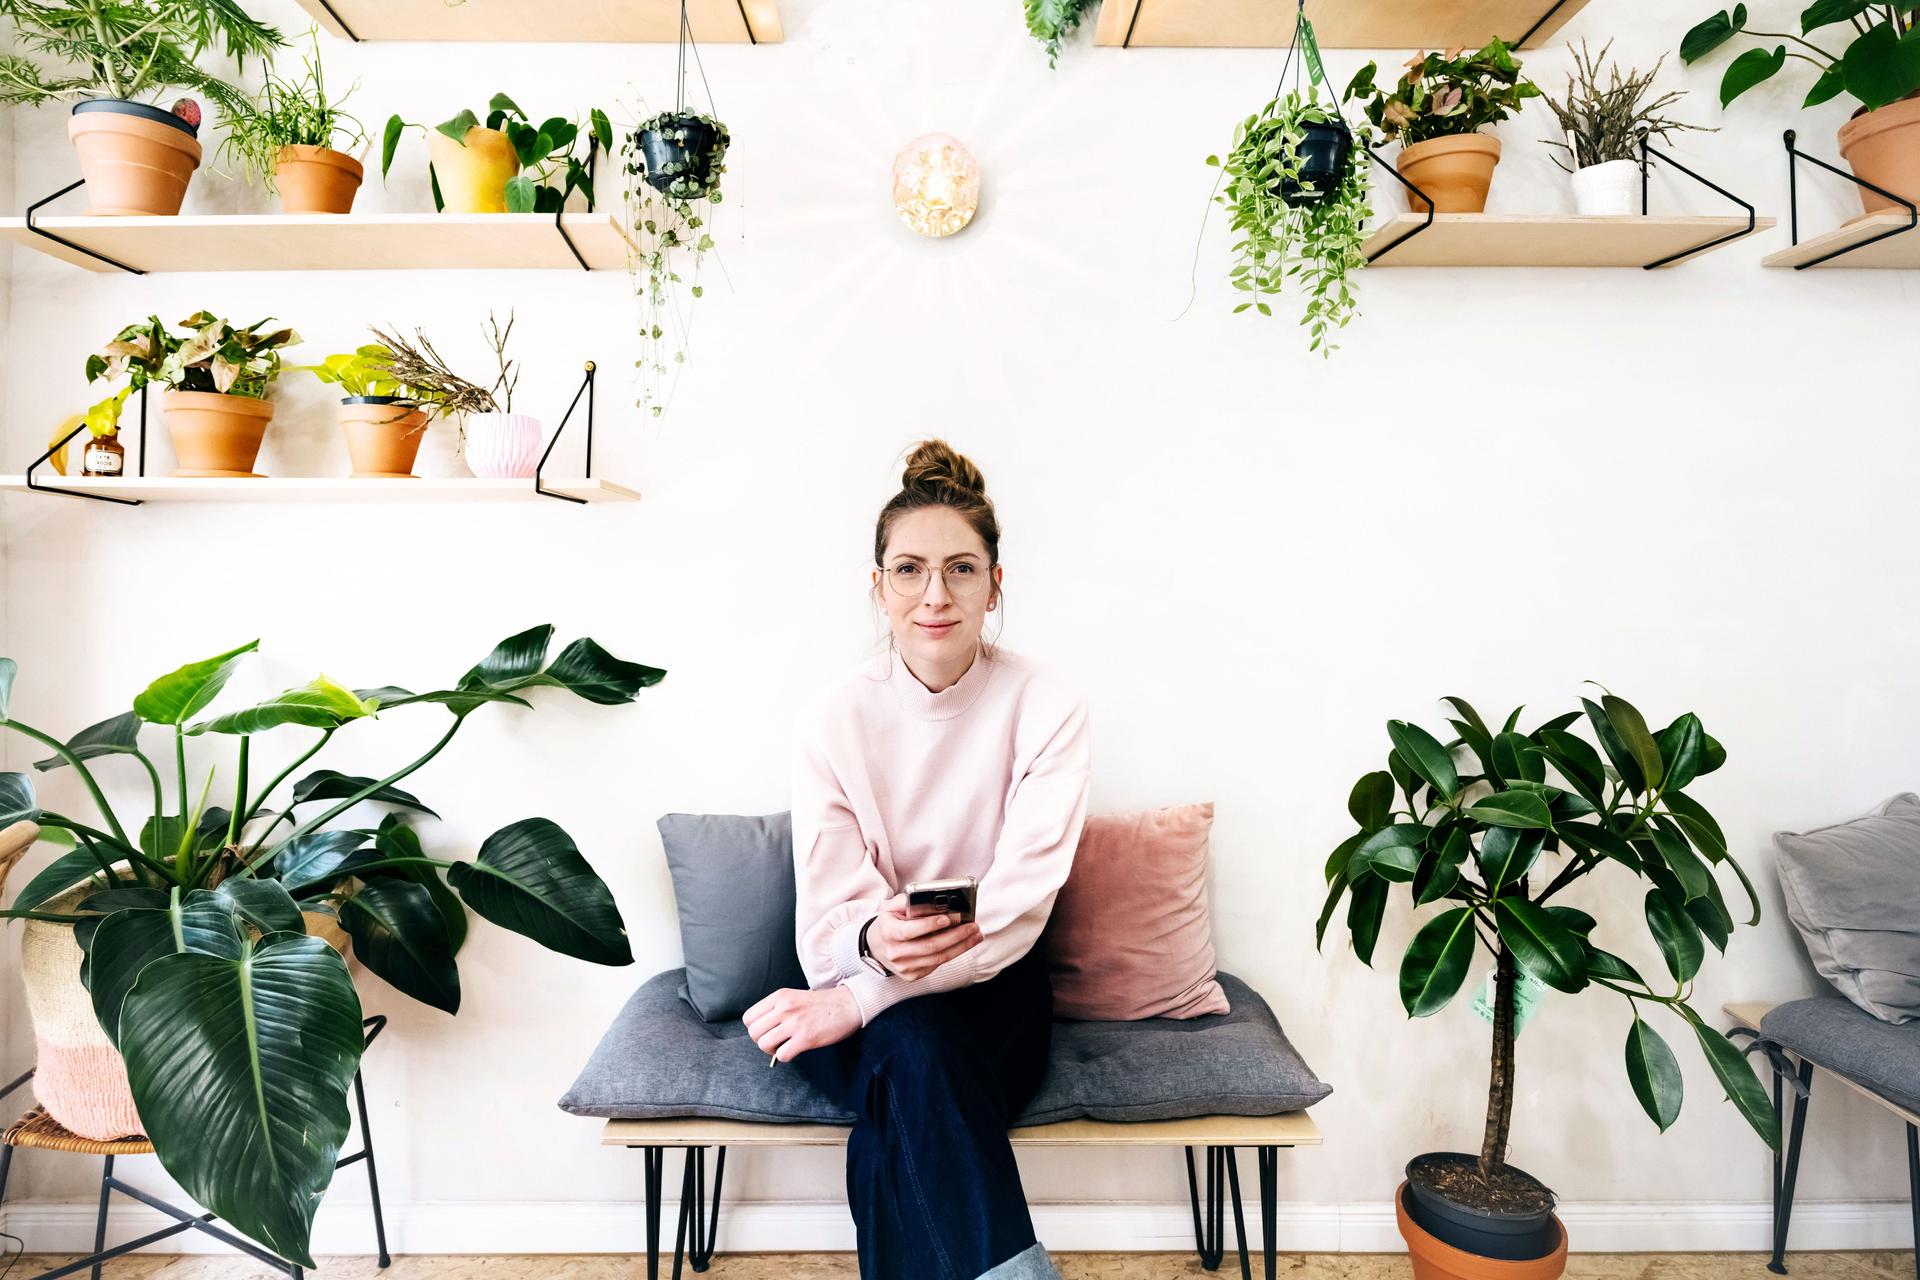 Eine junge Frau mit Smartphone in der Hand sitzt auf einer Bank mit grauem Kissen in einem hellen Raum. Sie guckt in die Kamera und ist umgeben von vielen Pflanzen an der Wand und am Boden.